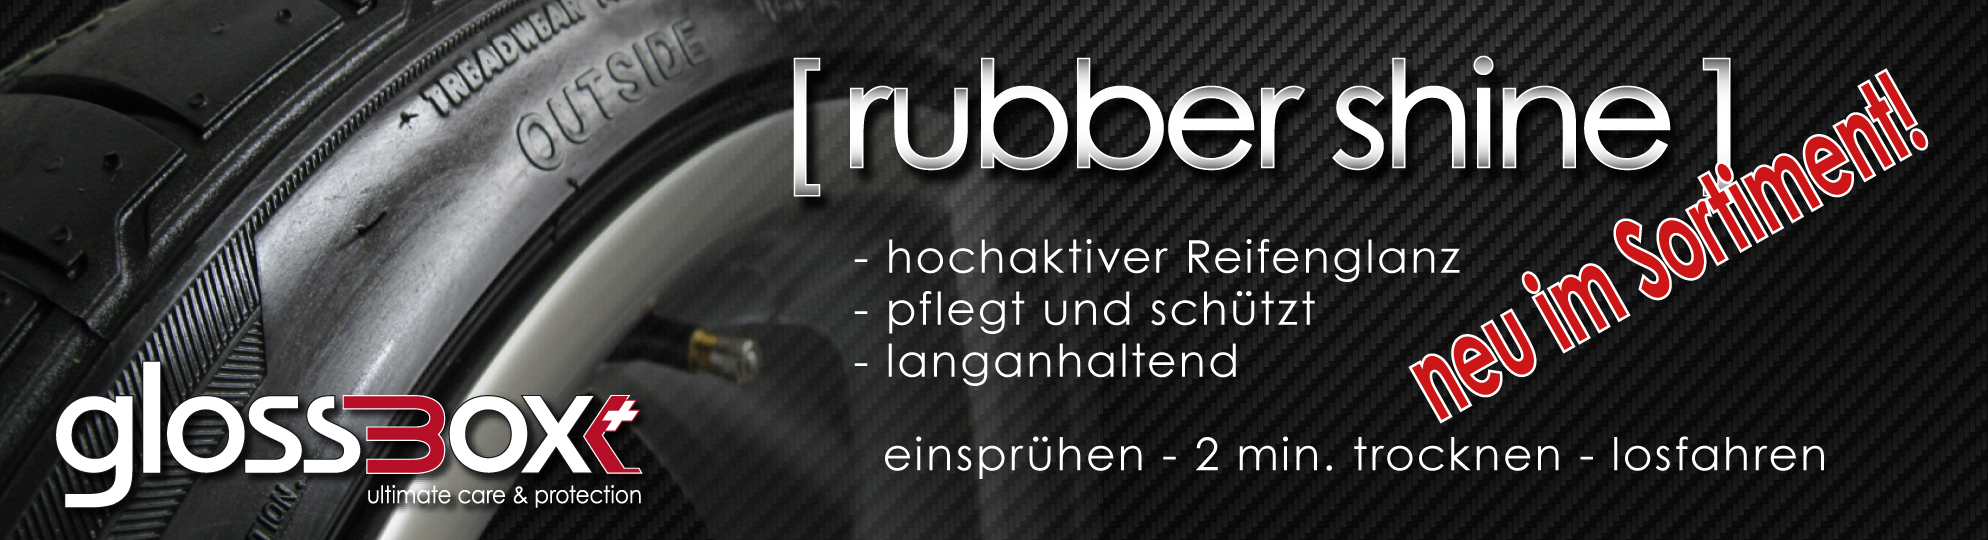 rubber shine-01